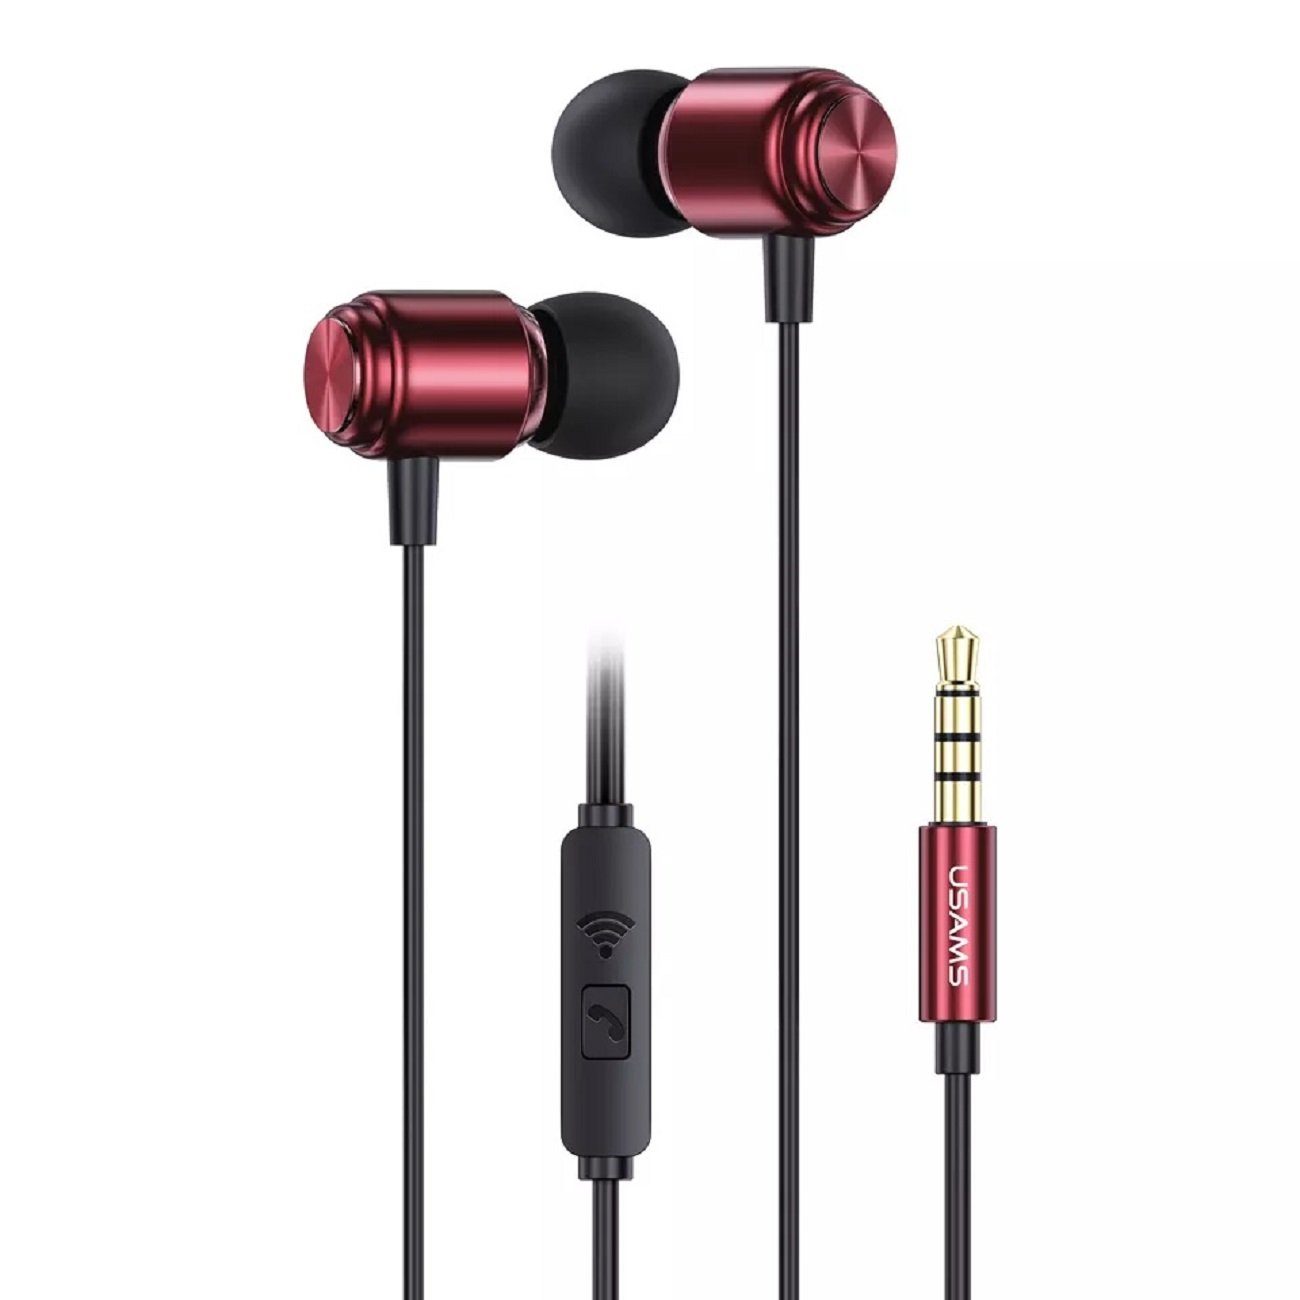 USAMS EP-44 Aux 3,5mm Kopfhörerstecker Bass HiFi Stereo Ohrhörer In-Ear-Kopfhörer (Kabelgebunden, In-Ear-Kopfhörer, intergrierte Steuerung für Anrufe und Musik, mit 3,5mm, 1,2m, Stereo-Kopfhörer) Dunkelrosa